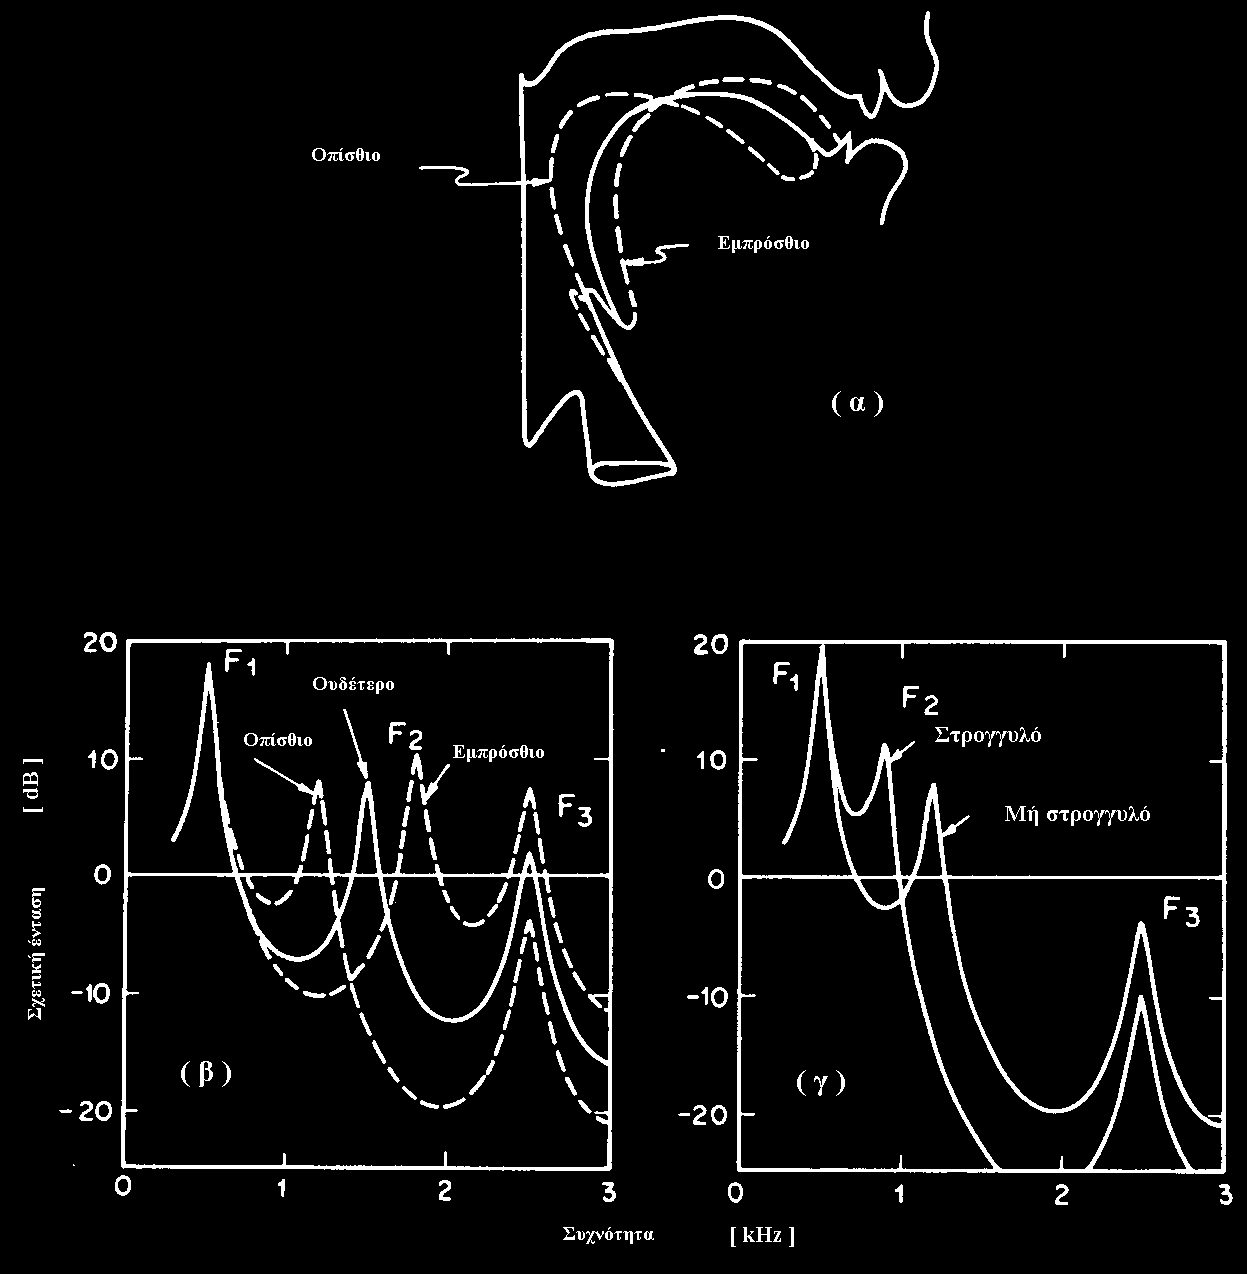 Παραδείγματα της σχέσης ανάμεσα στις μορφές της φωνητικής οδού και τις φασματικές περιβάλλουσες φωνηέντων: (α) σχηματική αναπαράσταση της τοξοειδούς διατομής της φωνητικής οδού για ένα ουδέτερο